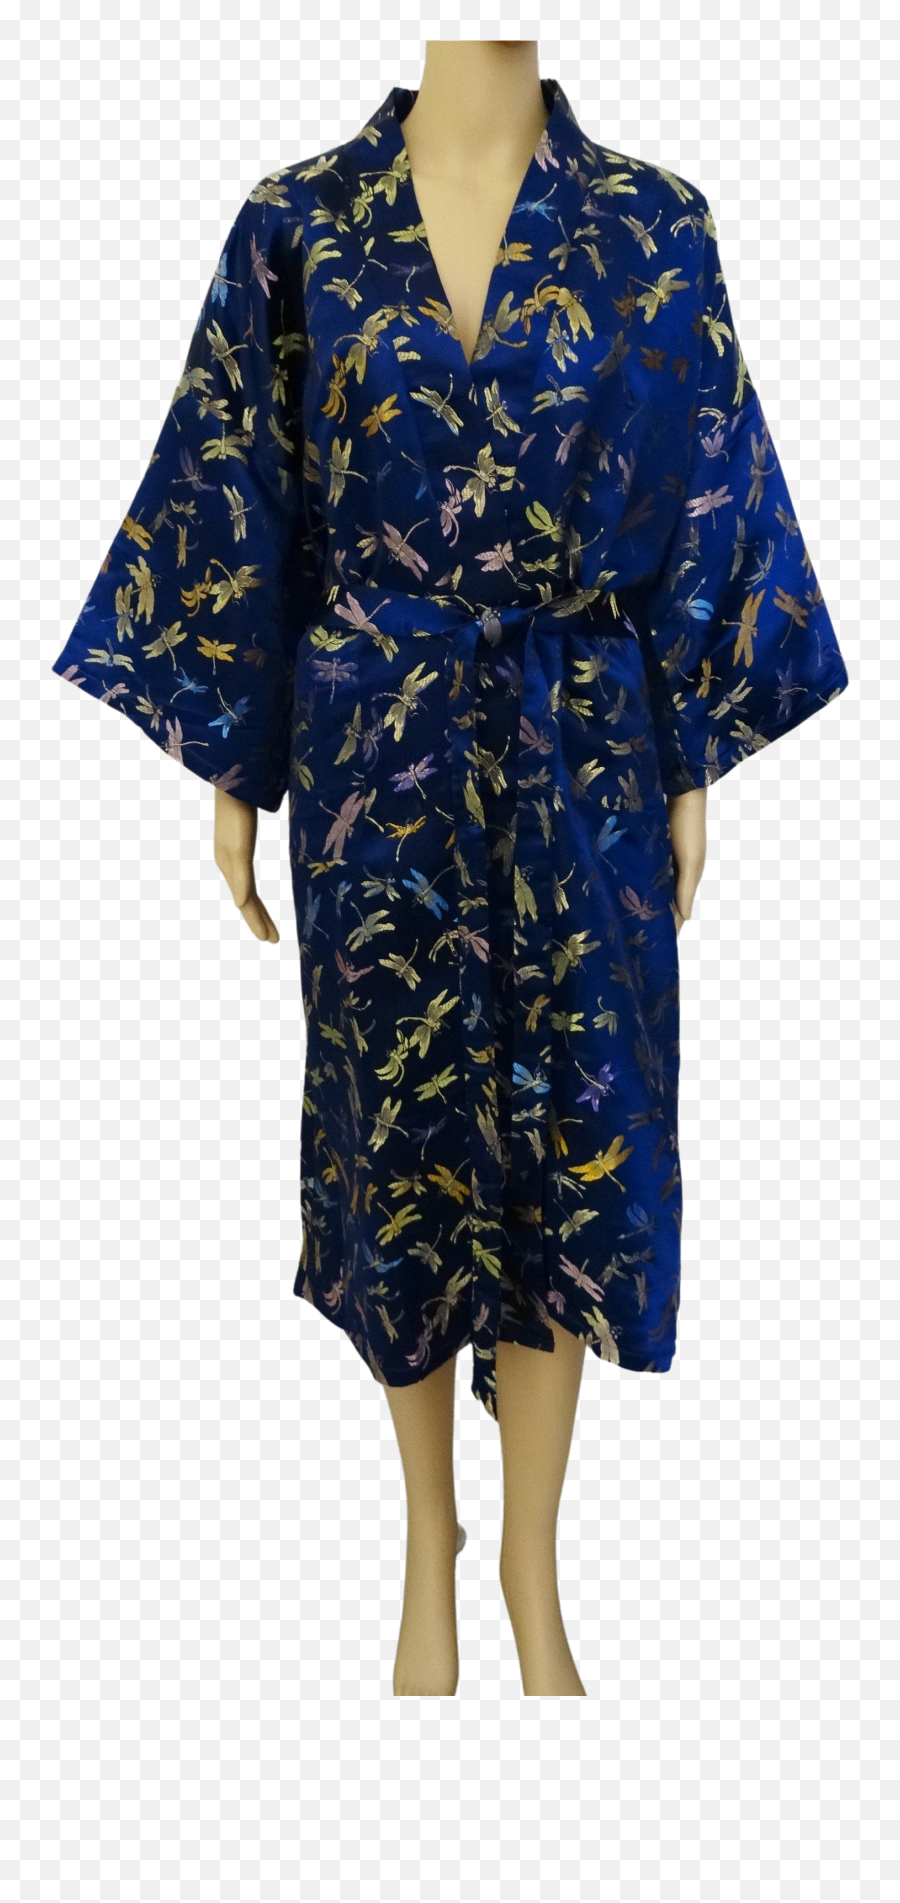 Vintage Royal Blue Silk Kimono Robe - Free Shipping Thrilling Emoji,Esmee Denters Emotions